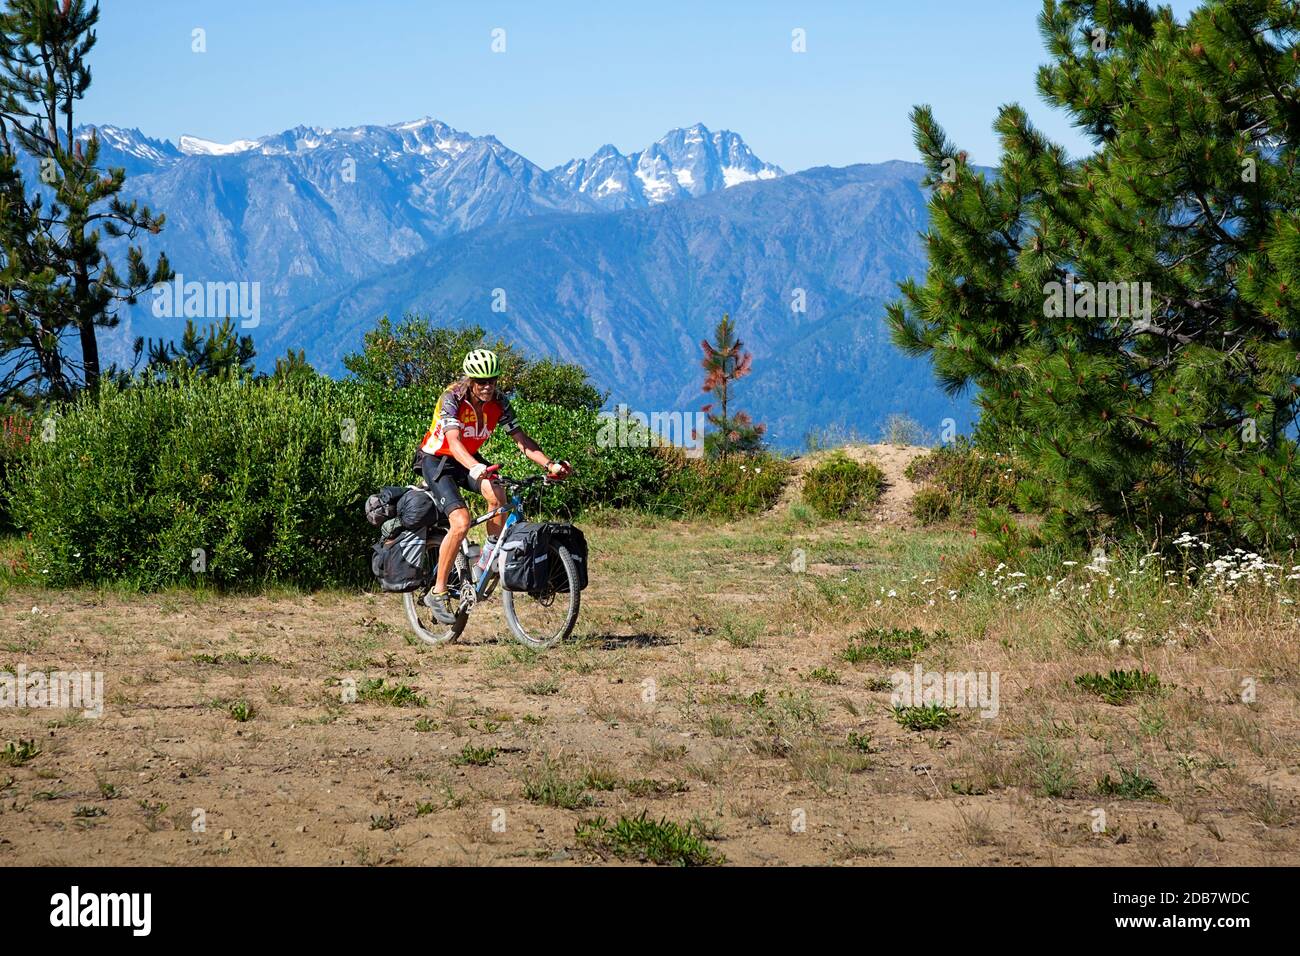 WA18135-00...WASHINGTON - cycliste qui traverse une participation le long de la route de la montagne Chumstick dans les montagnes Entiat de la forêt nationale de Wenatchee. Banque D'Images